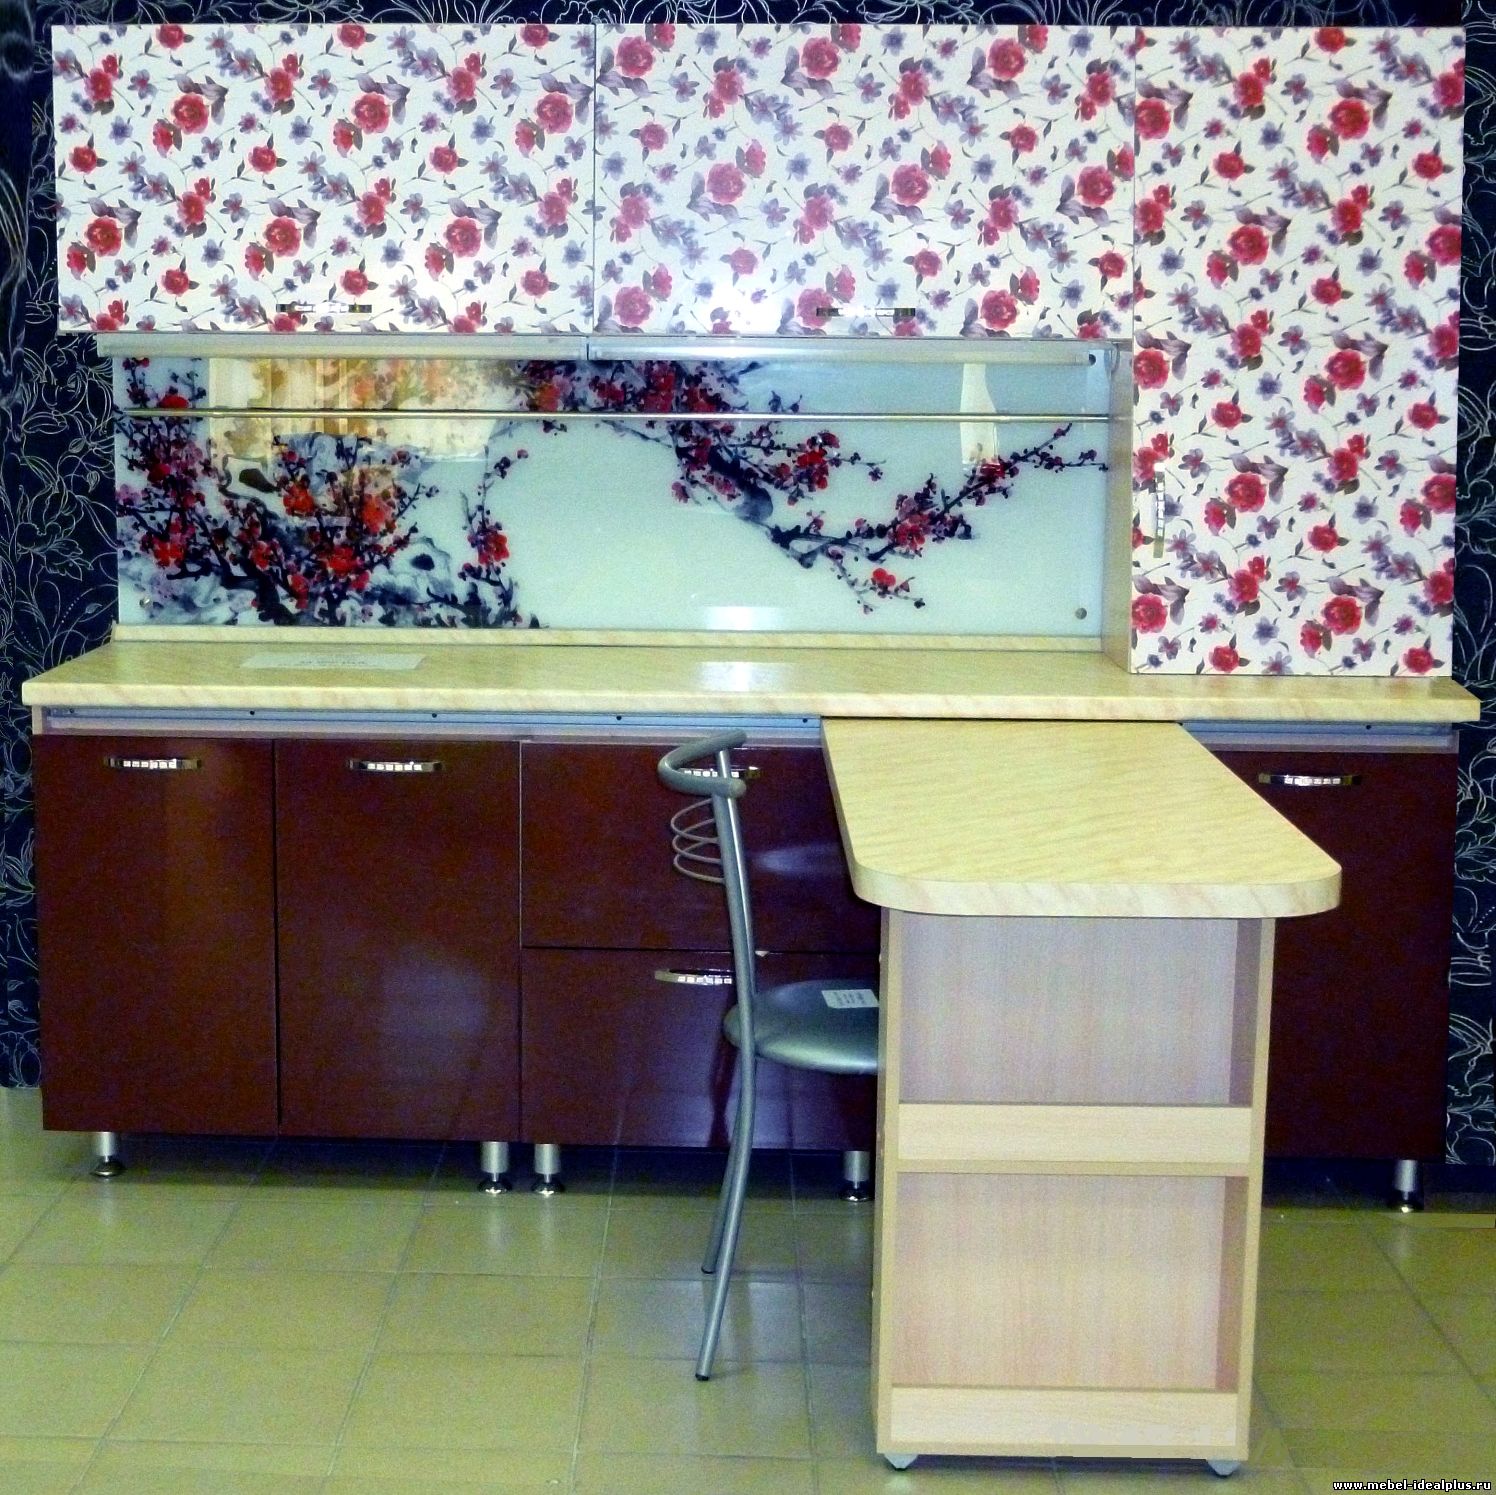 Кухонный гарнитур со скидкой более 15000 рублей в Екатеринбурге можно купить сейчас в салоне "Идеал+"